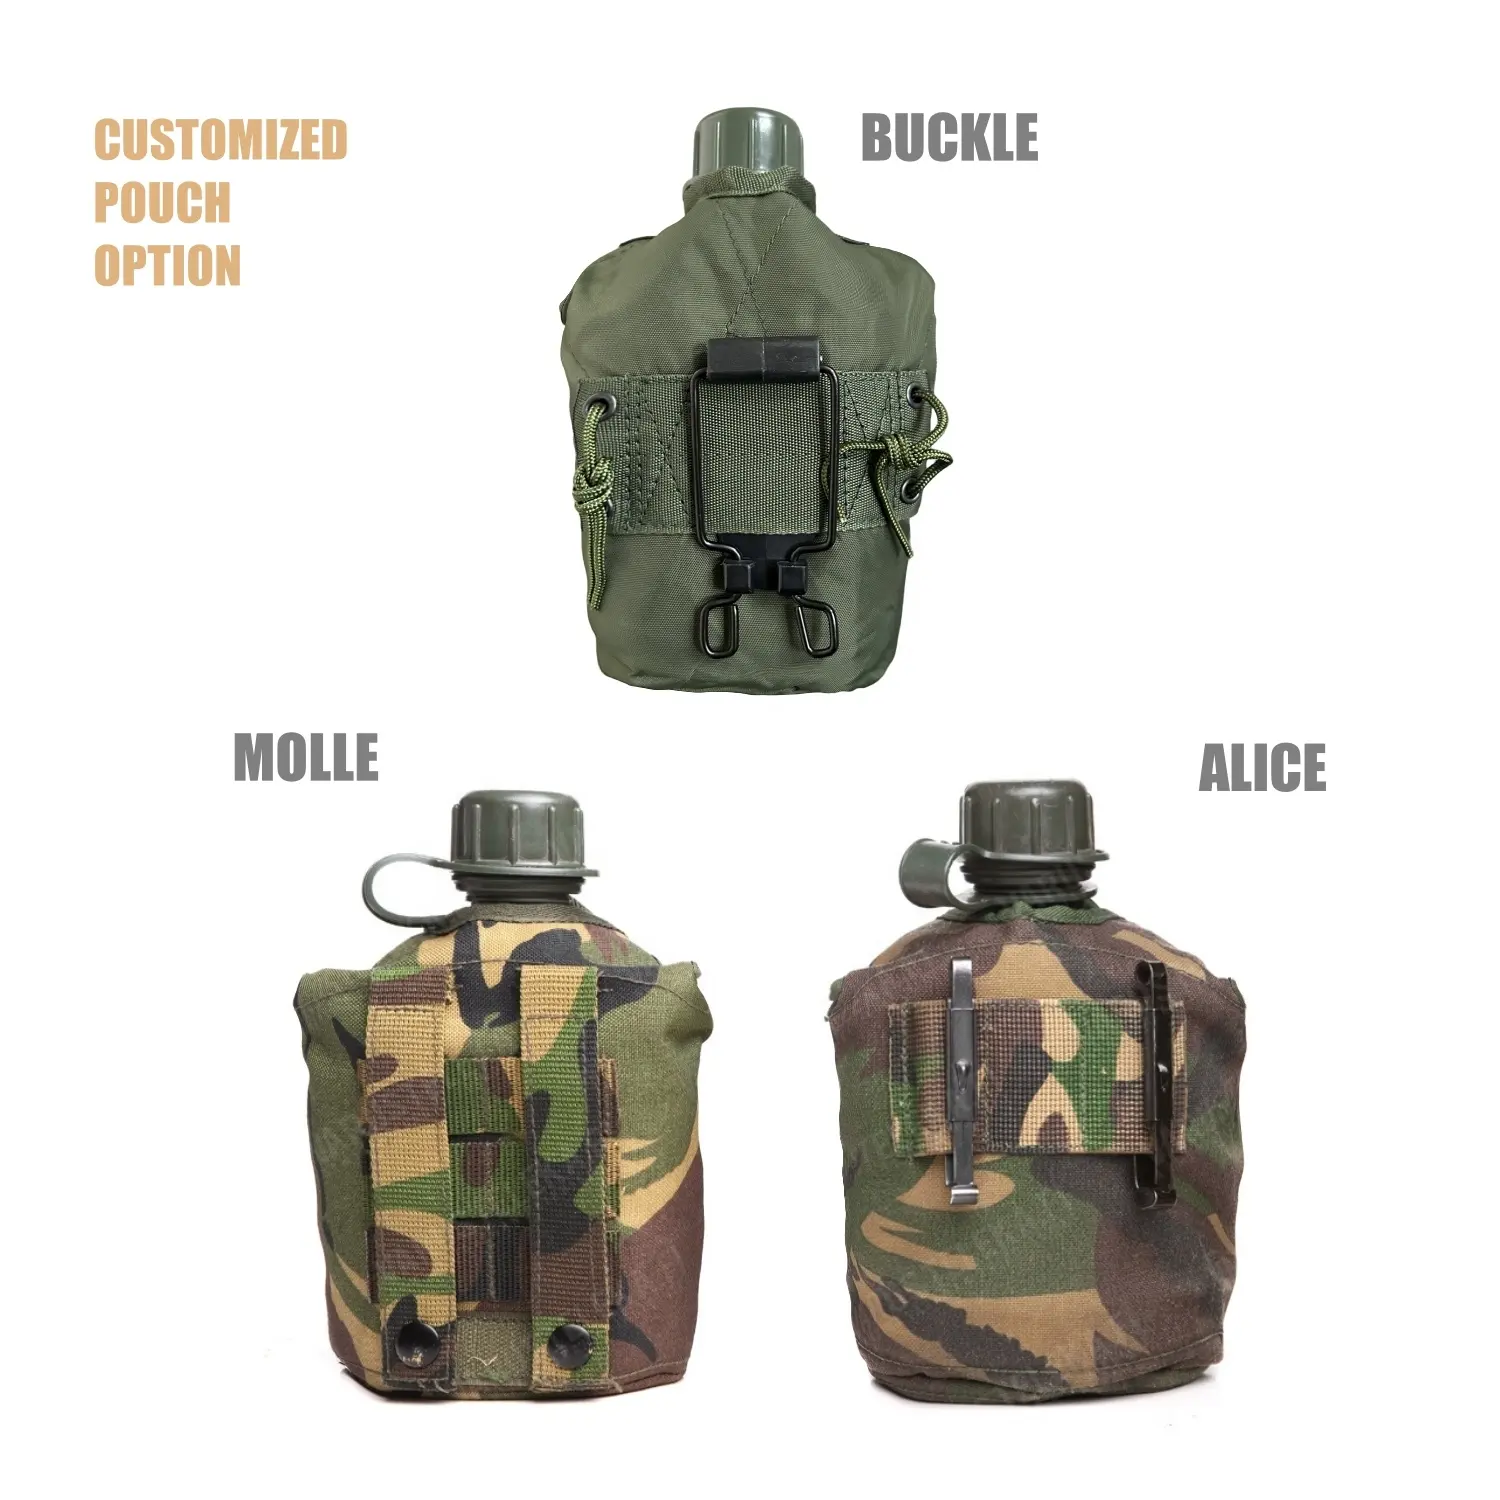 Oem usgi phong cách căng tin Kit với cốc nhôm có thể gập lại xử lý cho đi bộ đường dài Backpacking cắm trại quân đội màu xanh lá cây chai nước căng tin